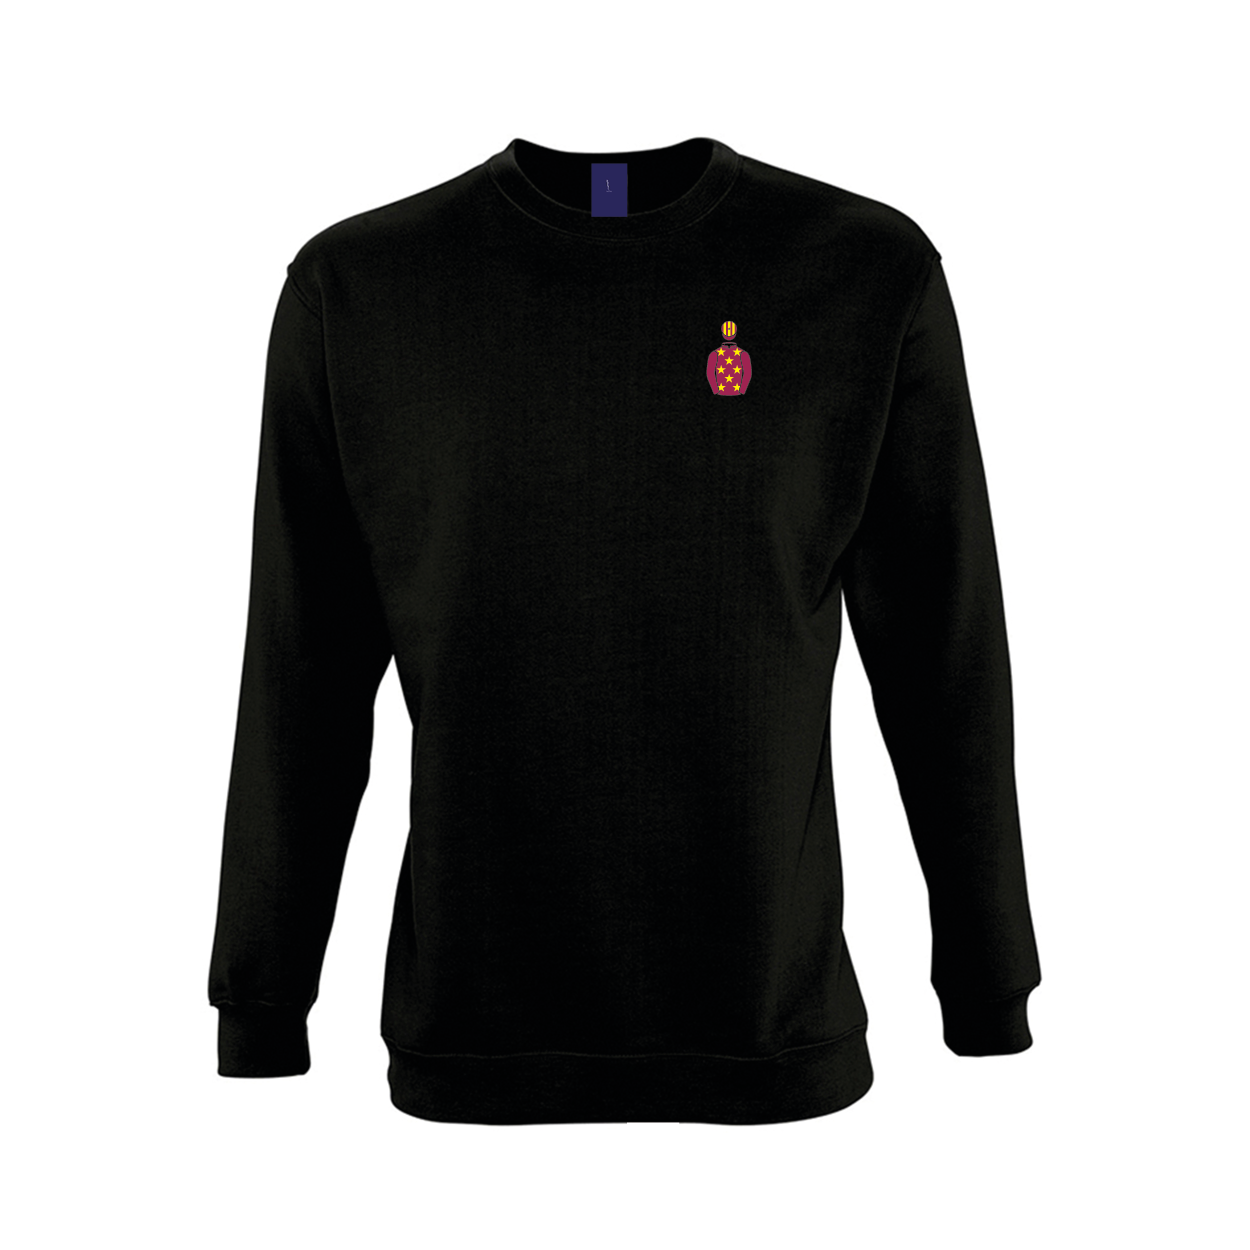 Unisex Barry Maloney Embroidered Sweatshirt - Clothing - Hacked Up